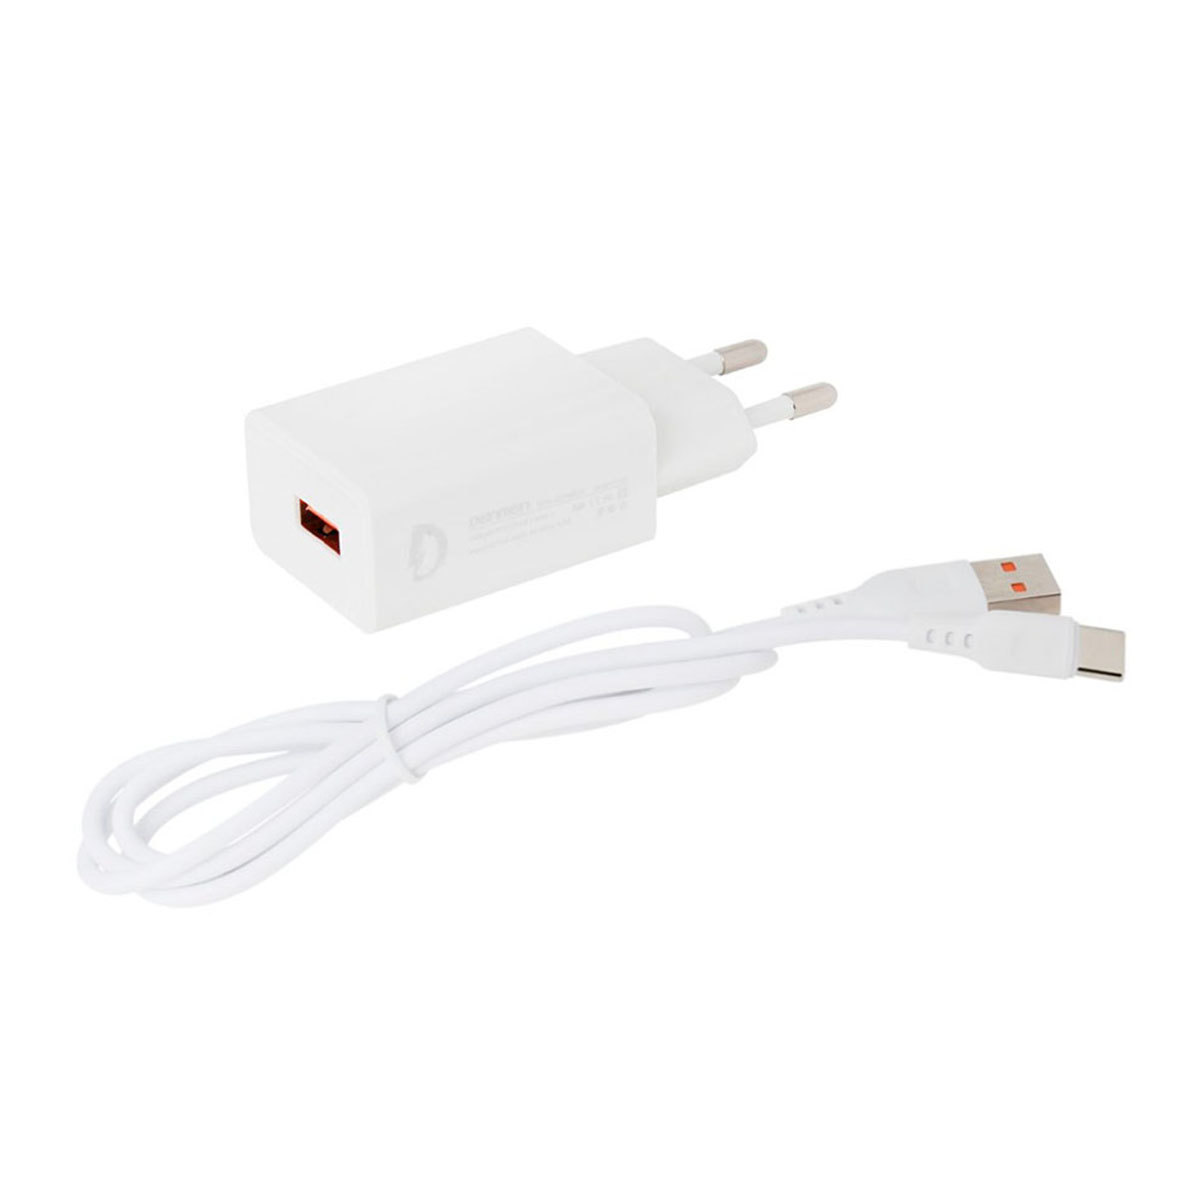 СЗУ (Сетевое зарядное устройство) DENMEN DC01T, 2.4A, 1 USB, кабель Type C, цвет белый